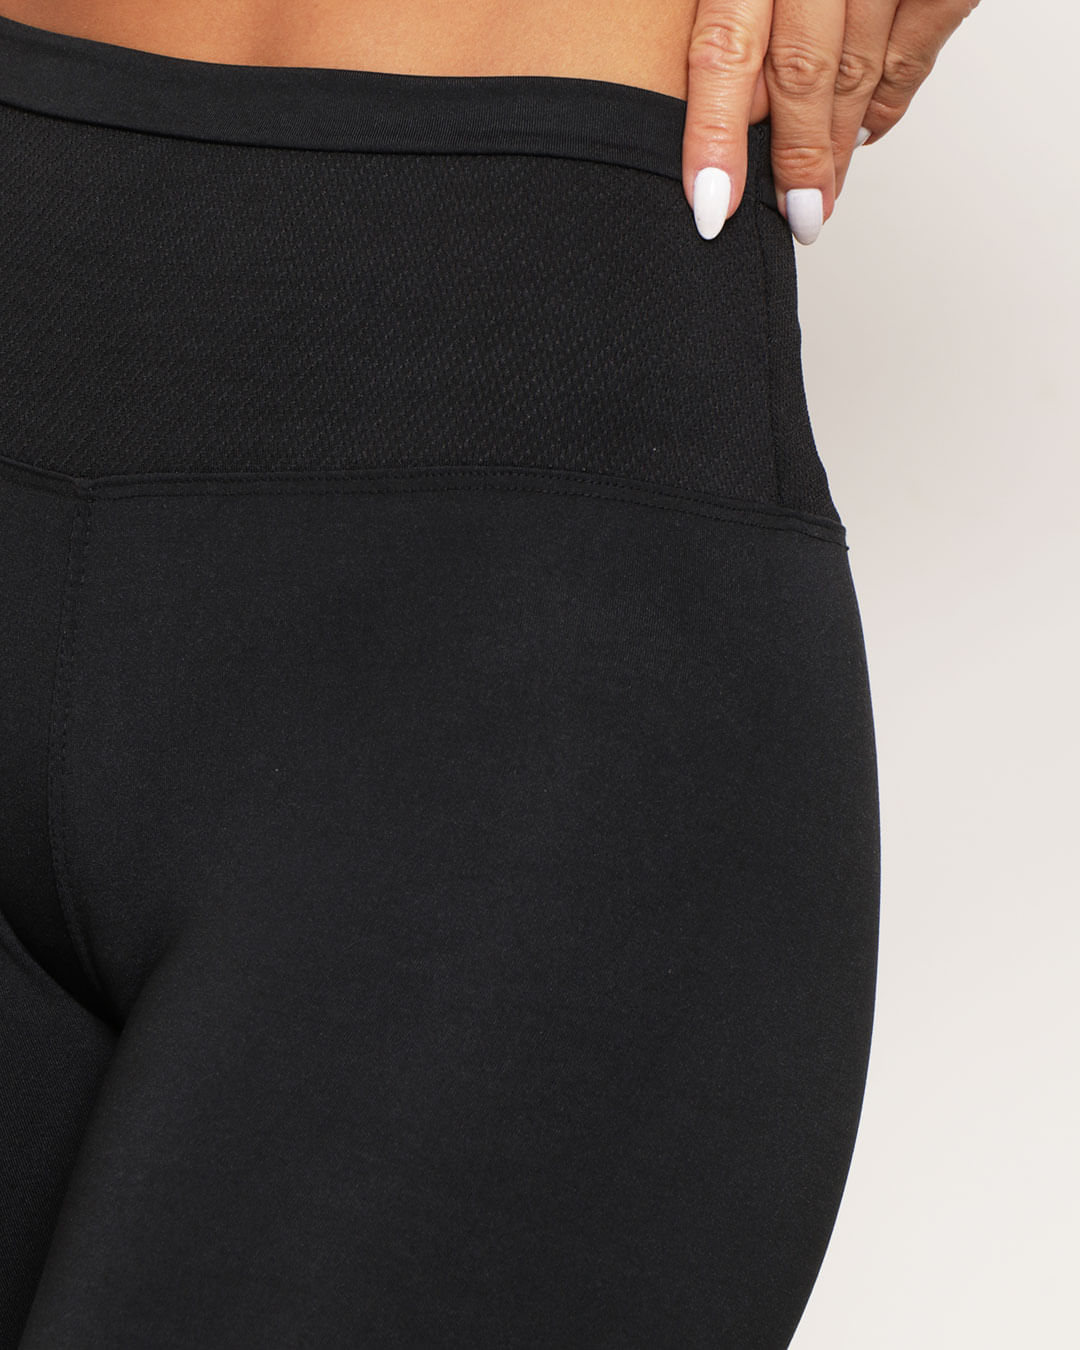 Calça feminina de malha preta transparente confortável sexy slim fit  leggings estribos legging de treino para mulheres esportiva corrida (cor:  P0485 preto, tamanho: pequeno)